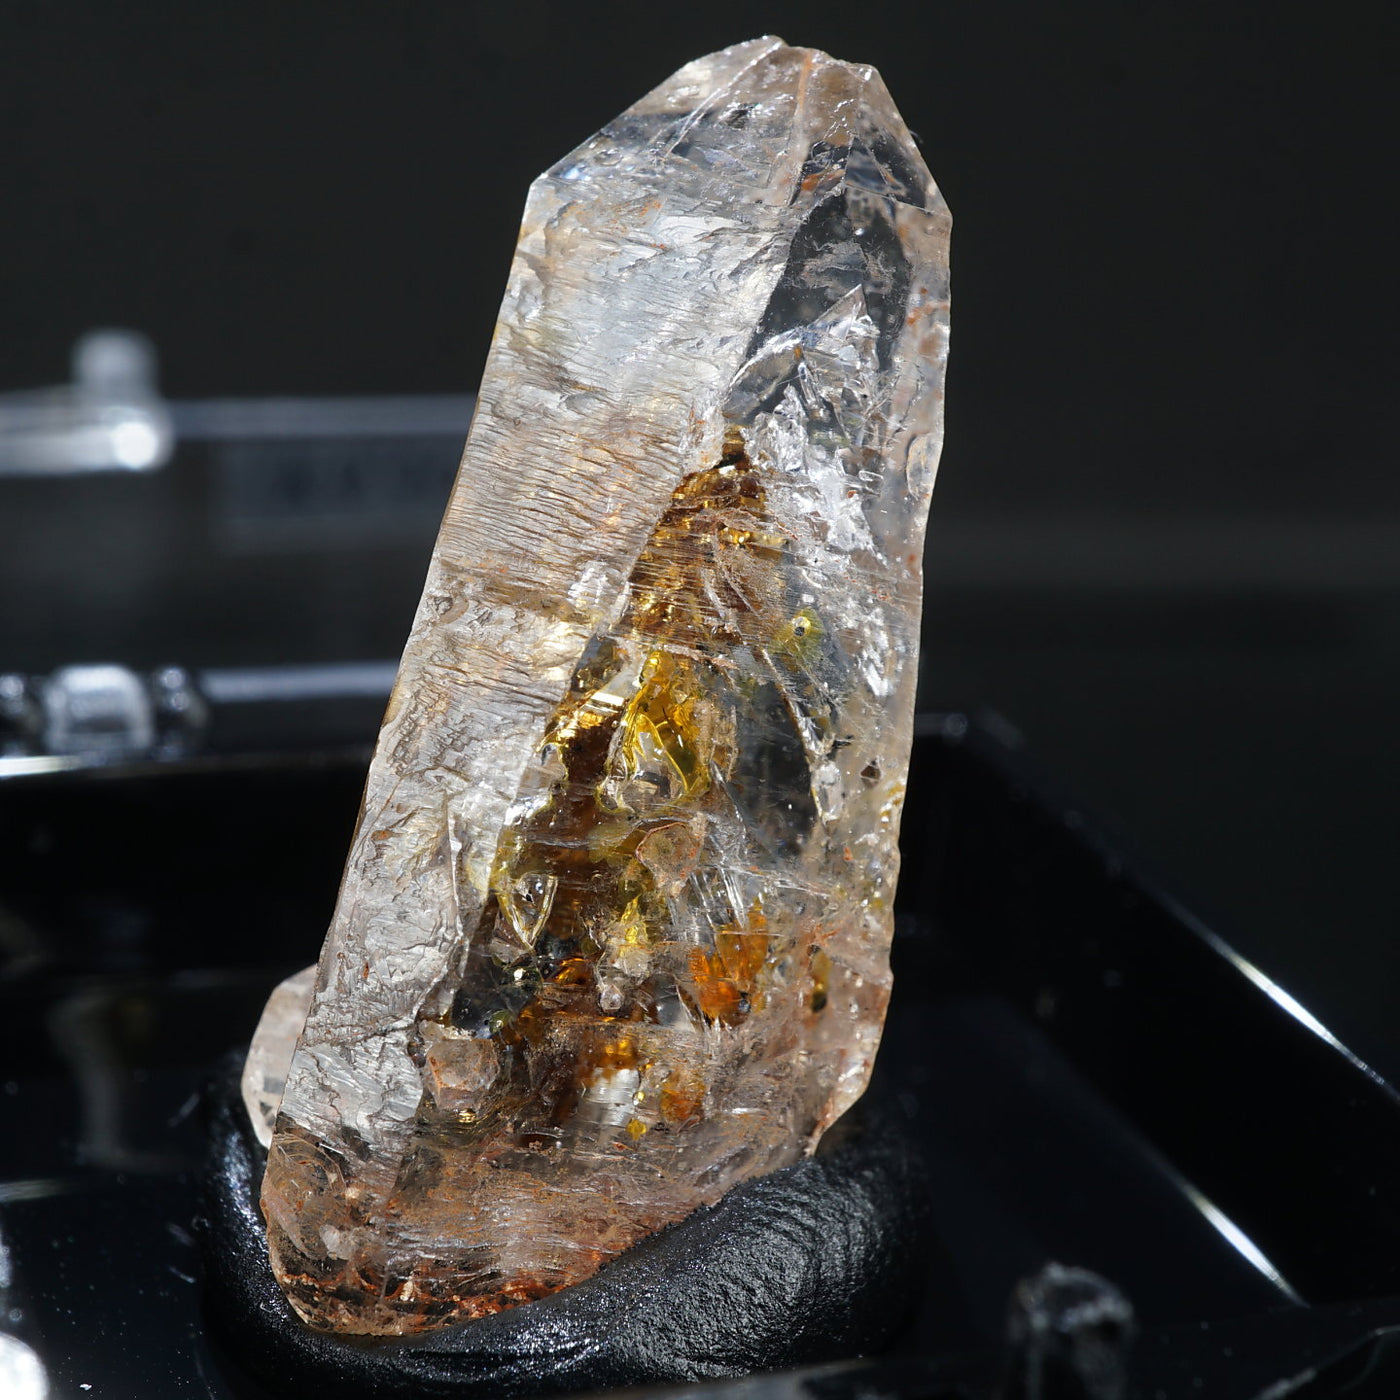 マダガスカル産 蛍光オイル入り水晶 – 天然石ハッピーギフト